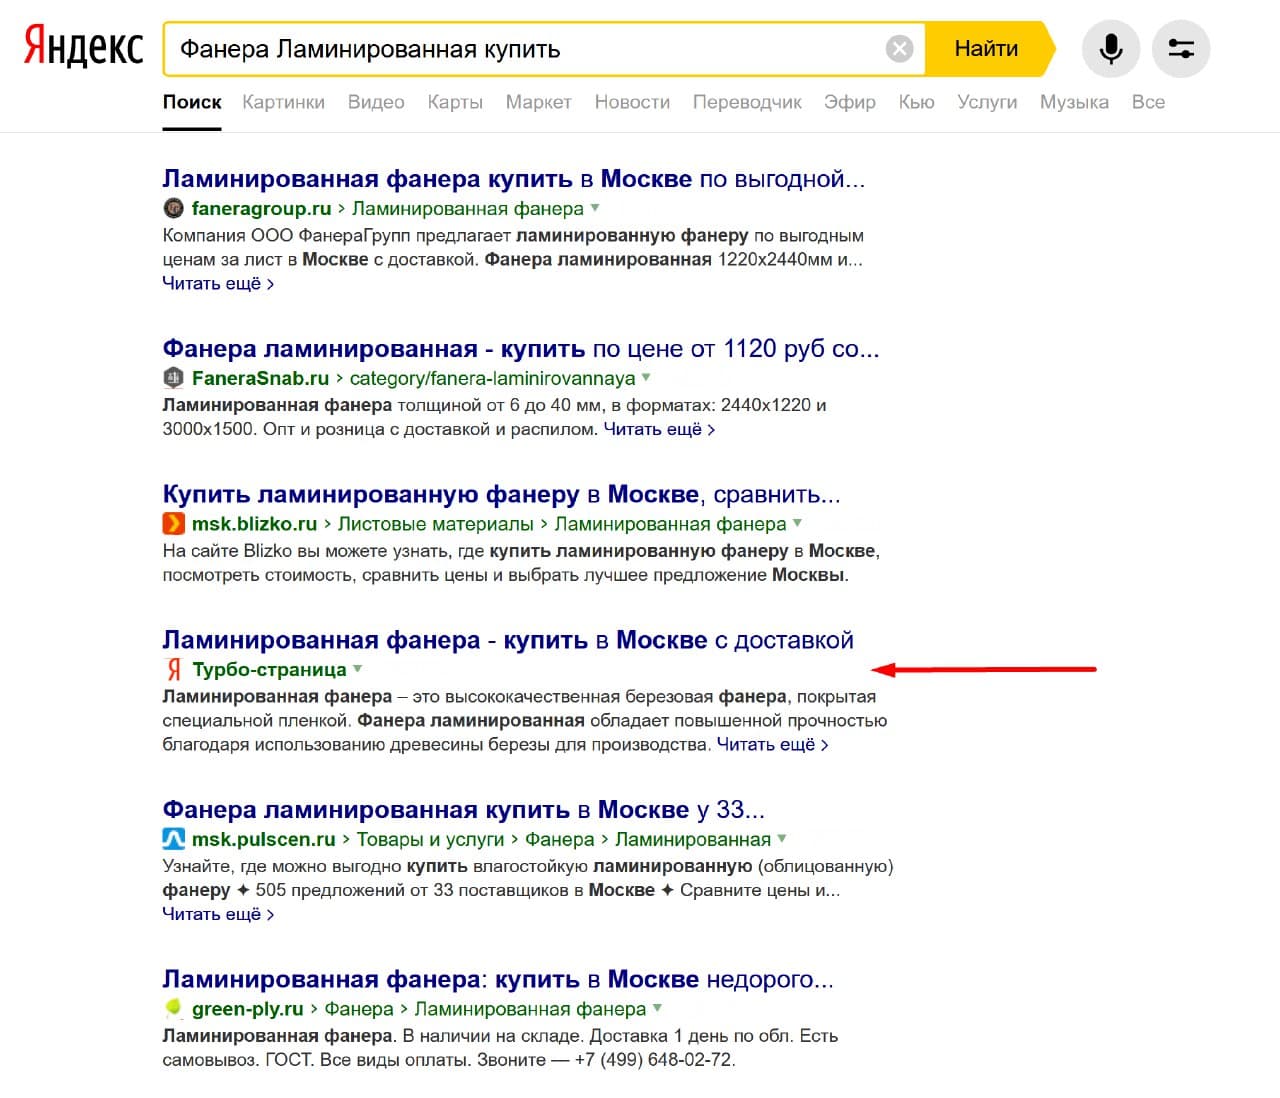 Яндекс стал показывать отдельные турбо-страницы в органической выдаче